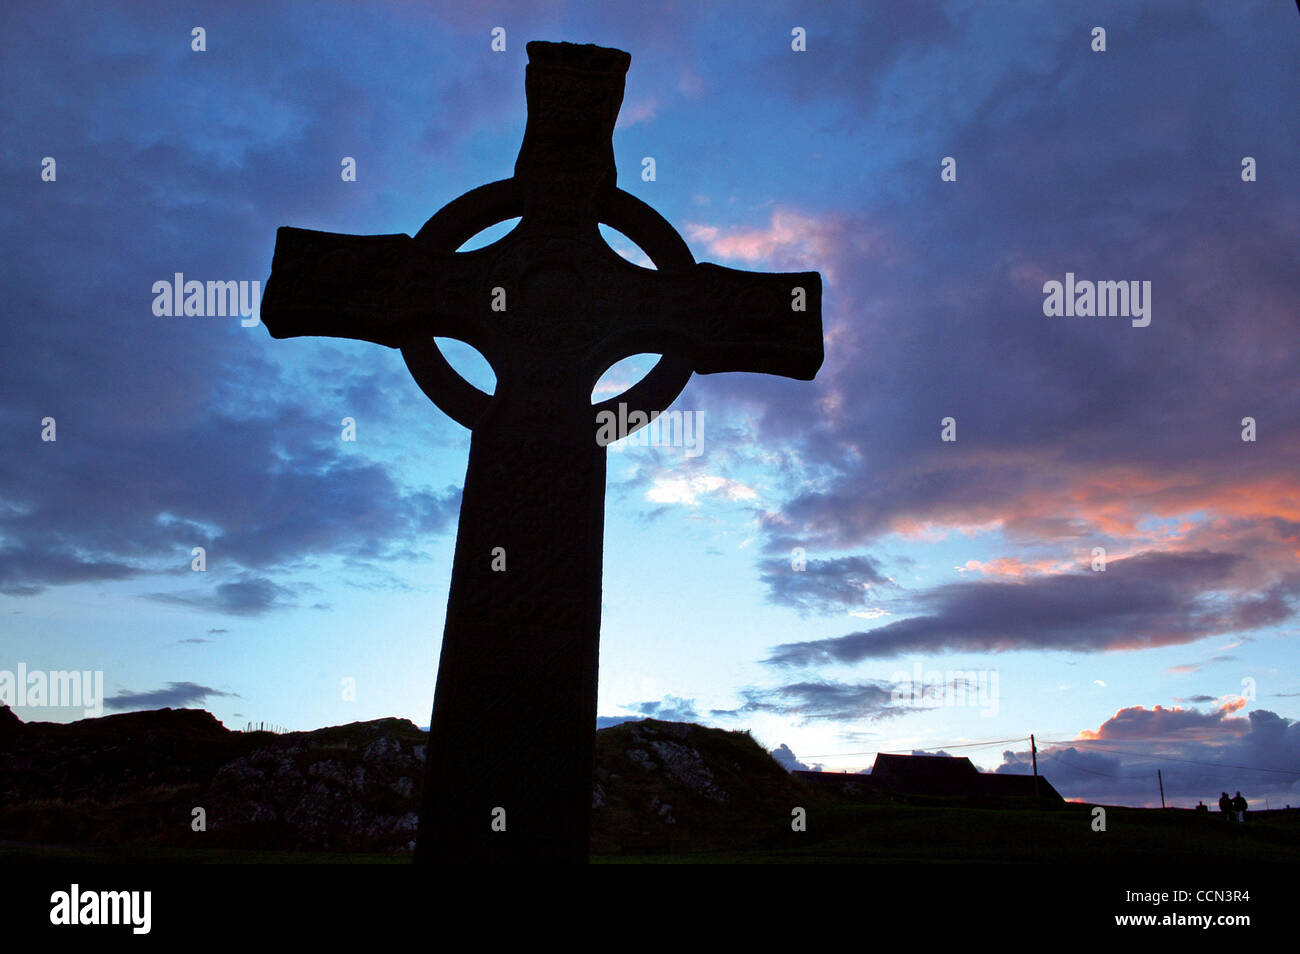 Une grande croix celtique se dresse majestueusement à l'extérieur de l'abbaye d'Iona petite Isle d'Iona au large de la côte ouest de l'Écosse. Saint Colomba, qui a fondé les monastères en Irlande, s'installa sur la petite île en 563 AD, ce qui porte le christianisme en Ecosse et estabilishing ce qui allait devenir l'Église d'Écosse. ©Robin sw Banque D'Images